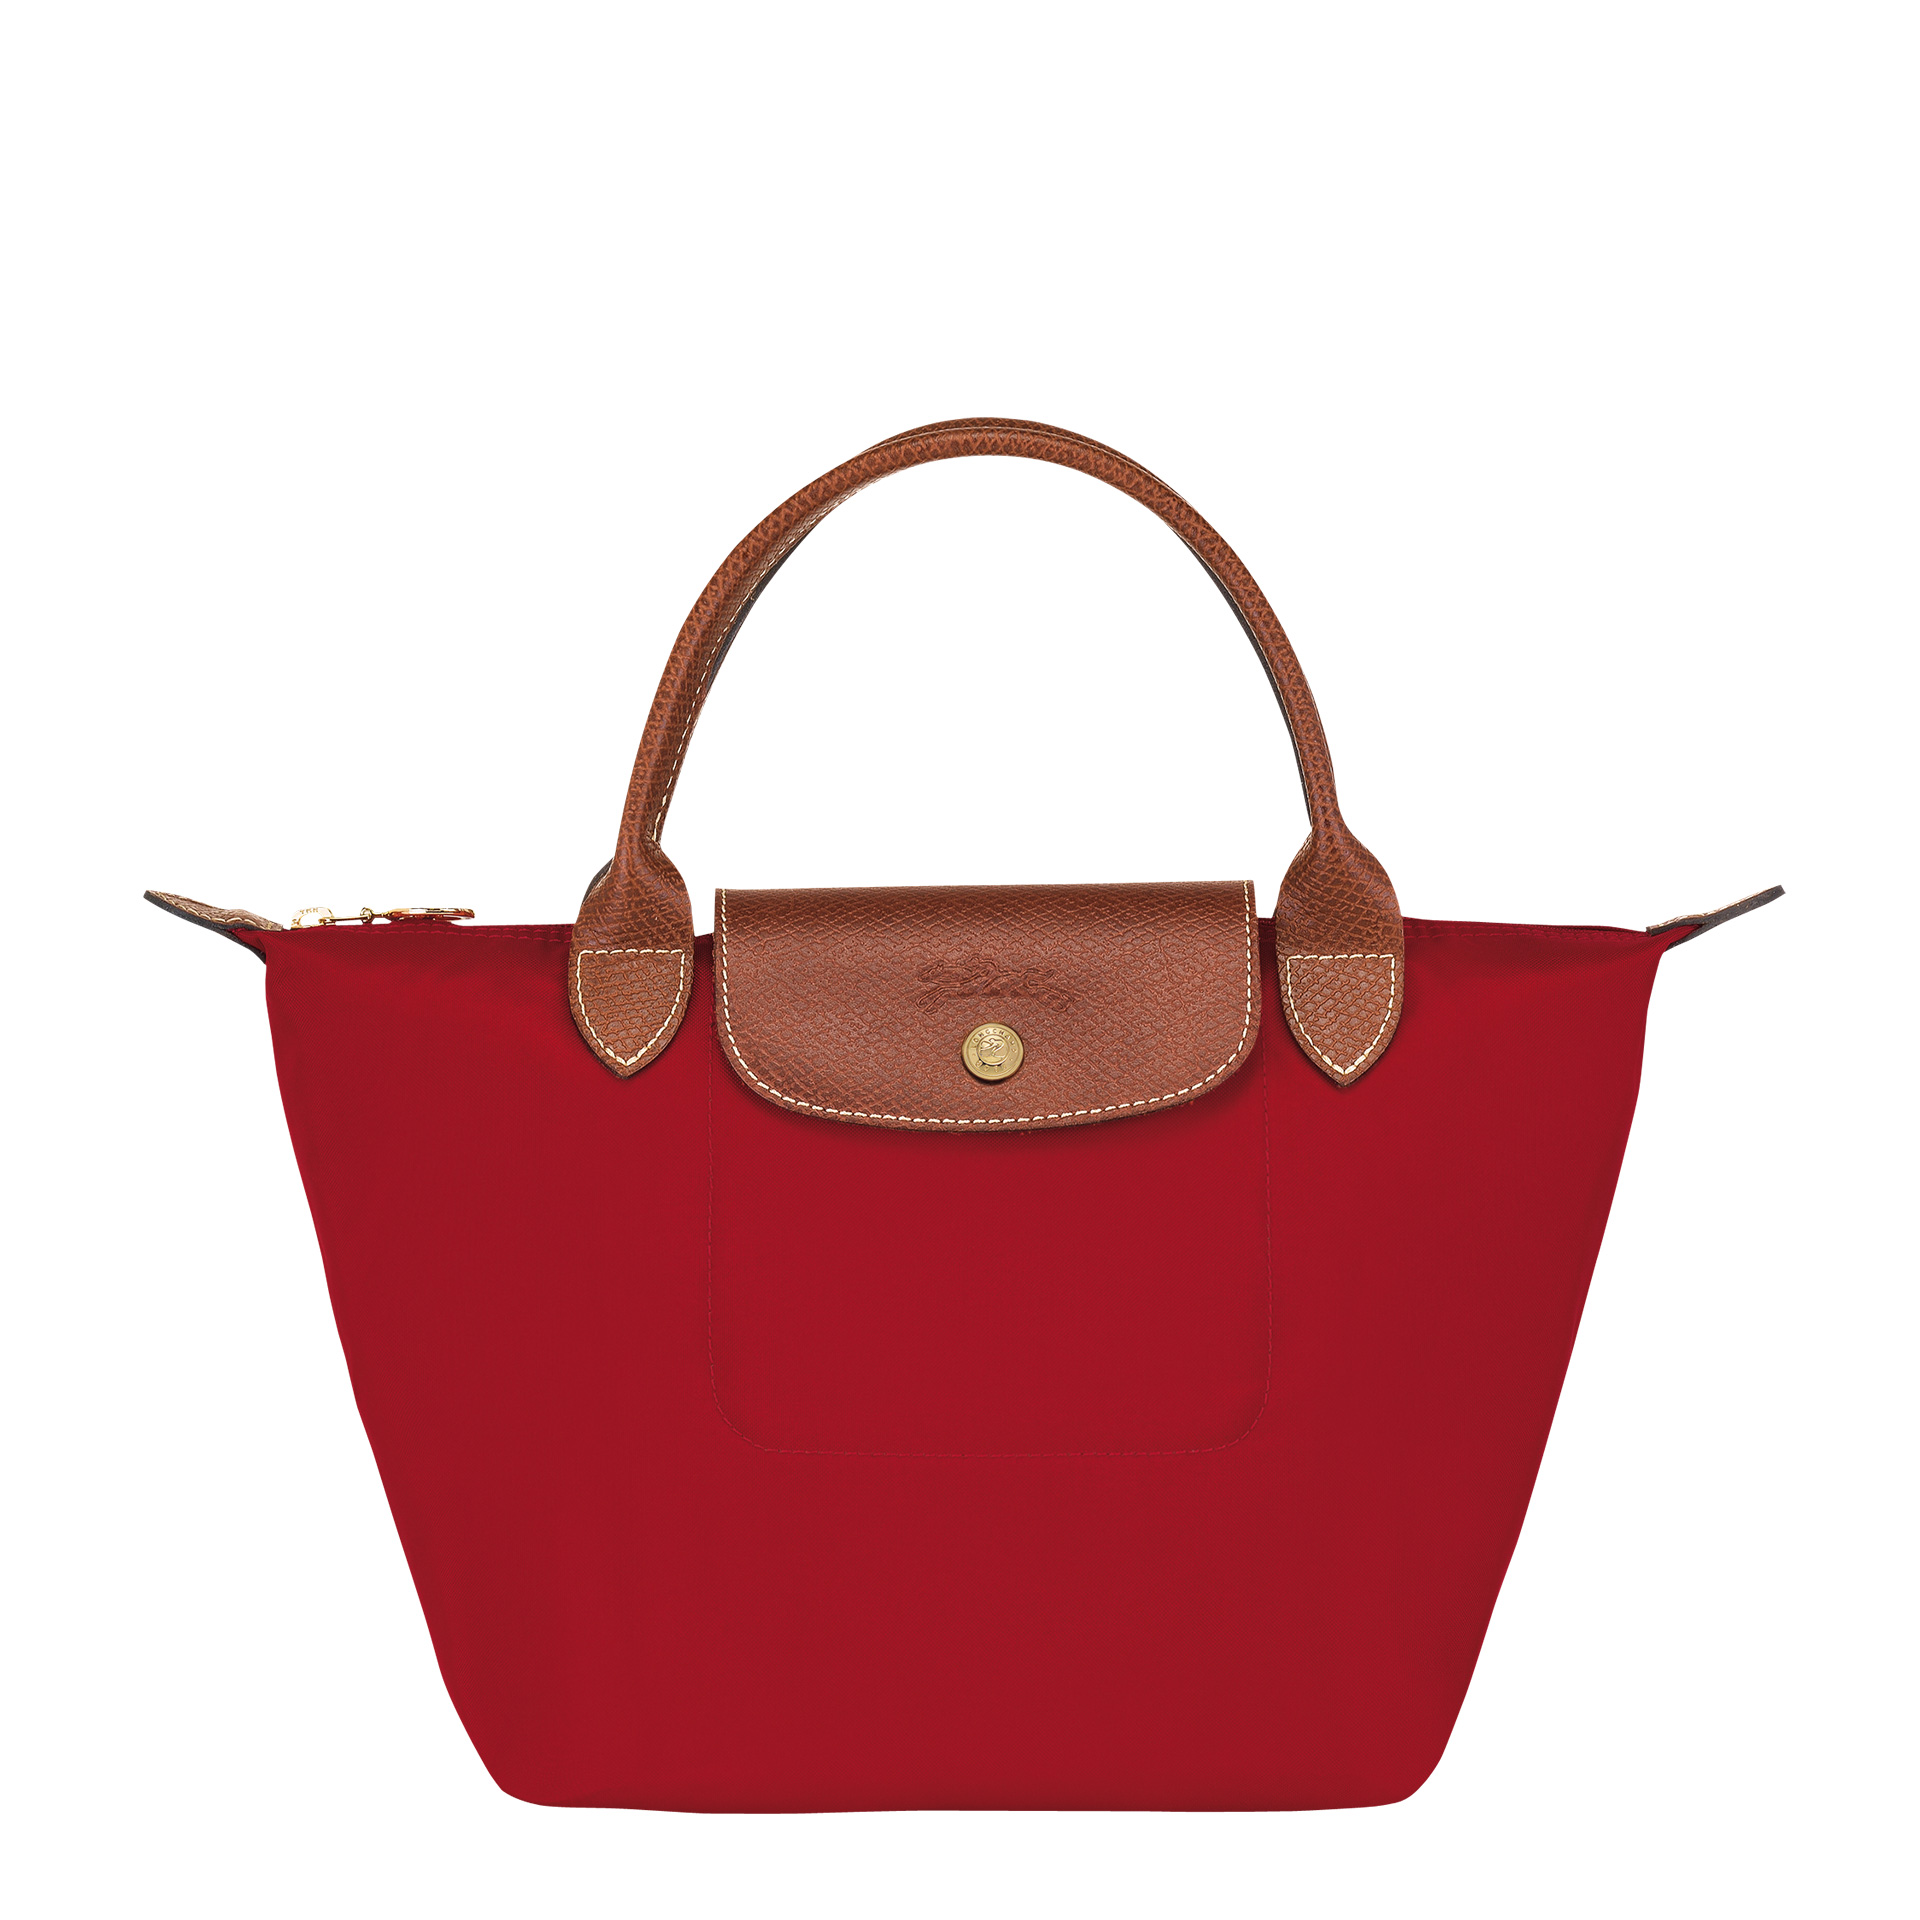 Longchamp Le Pliage Handtasche S red